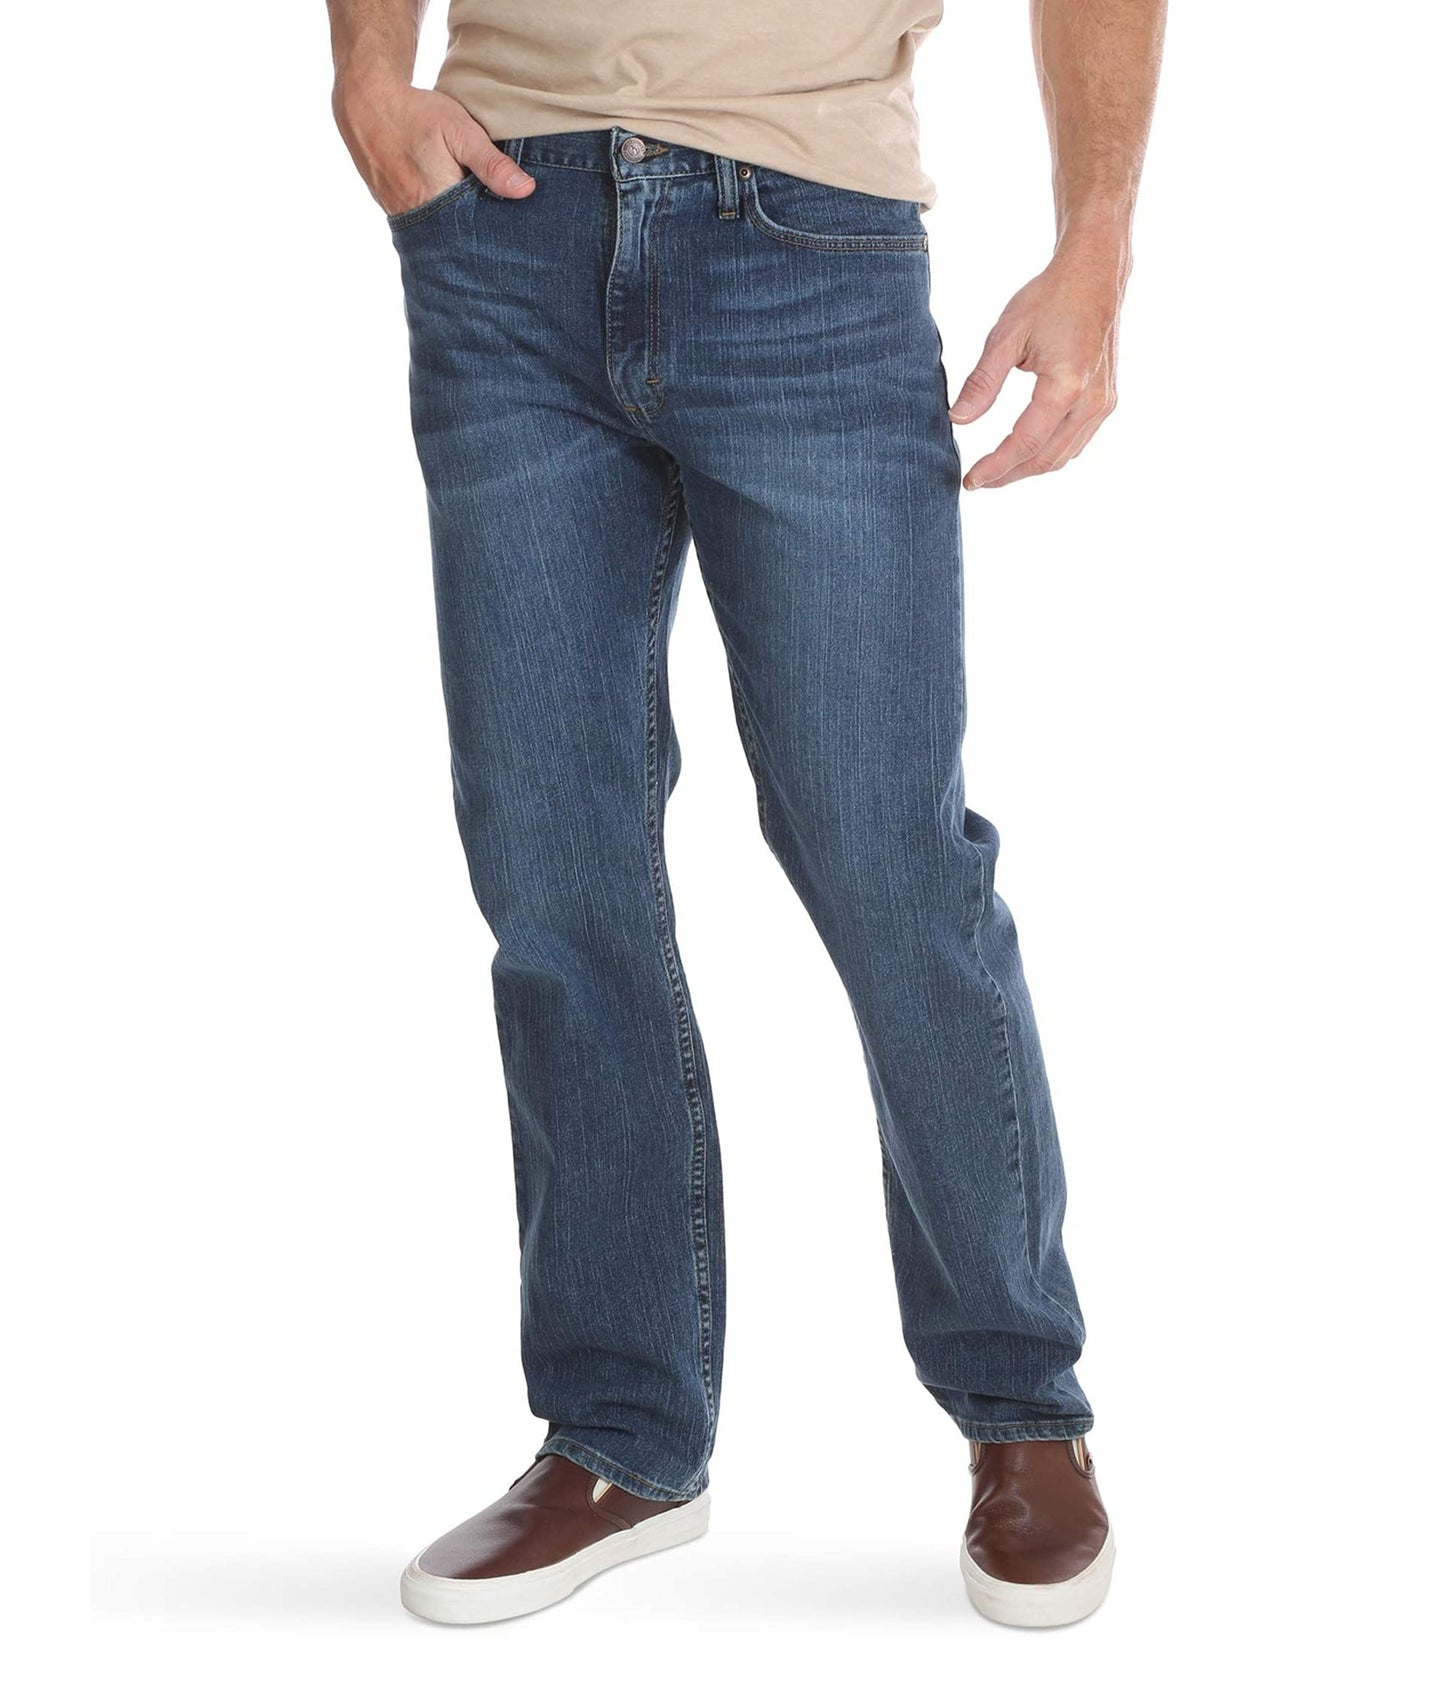 Wrangler Authentics Men's Big & Tall Classic 5-Pocket Regular Fit Jean, Blue Ocean Flex, 44W x 28L